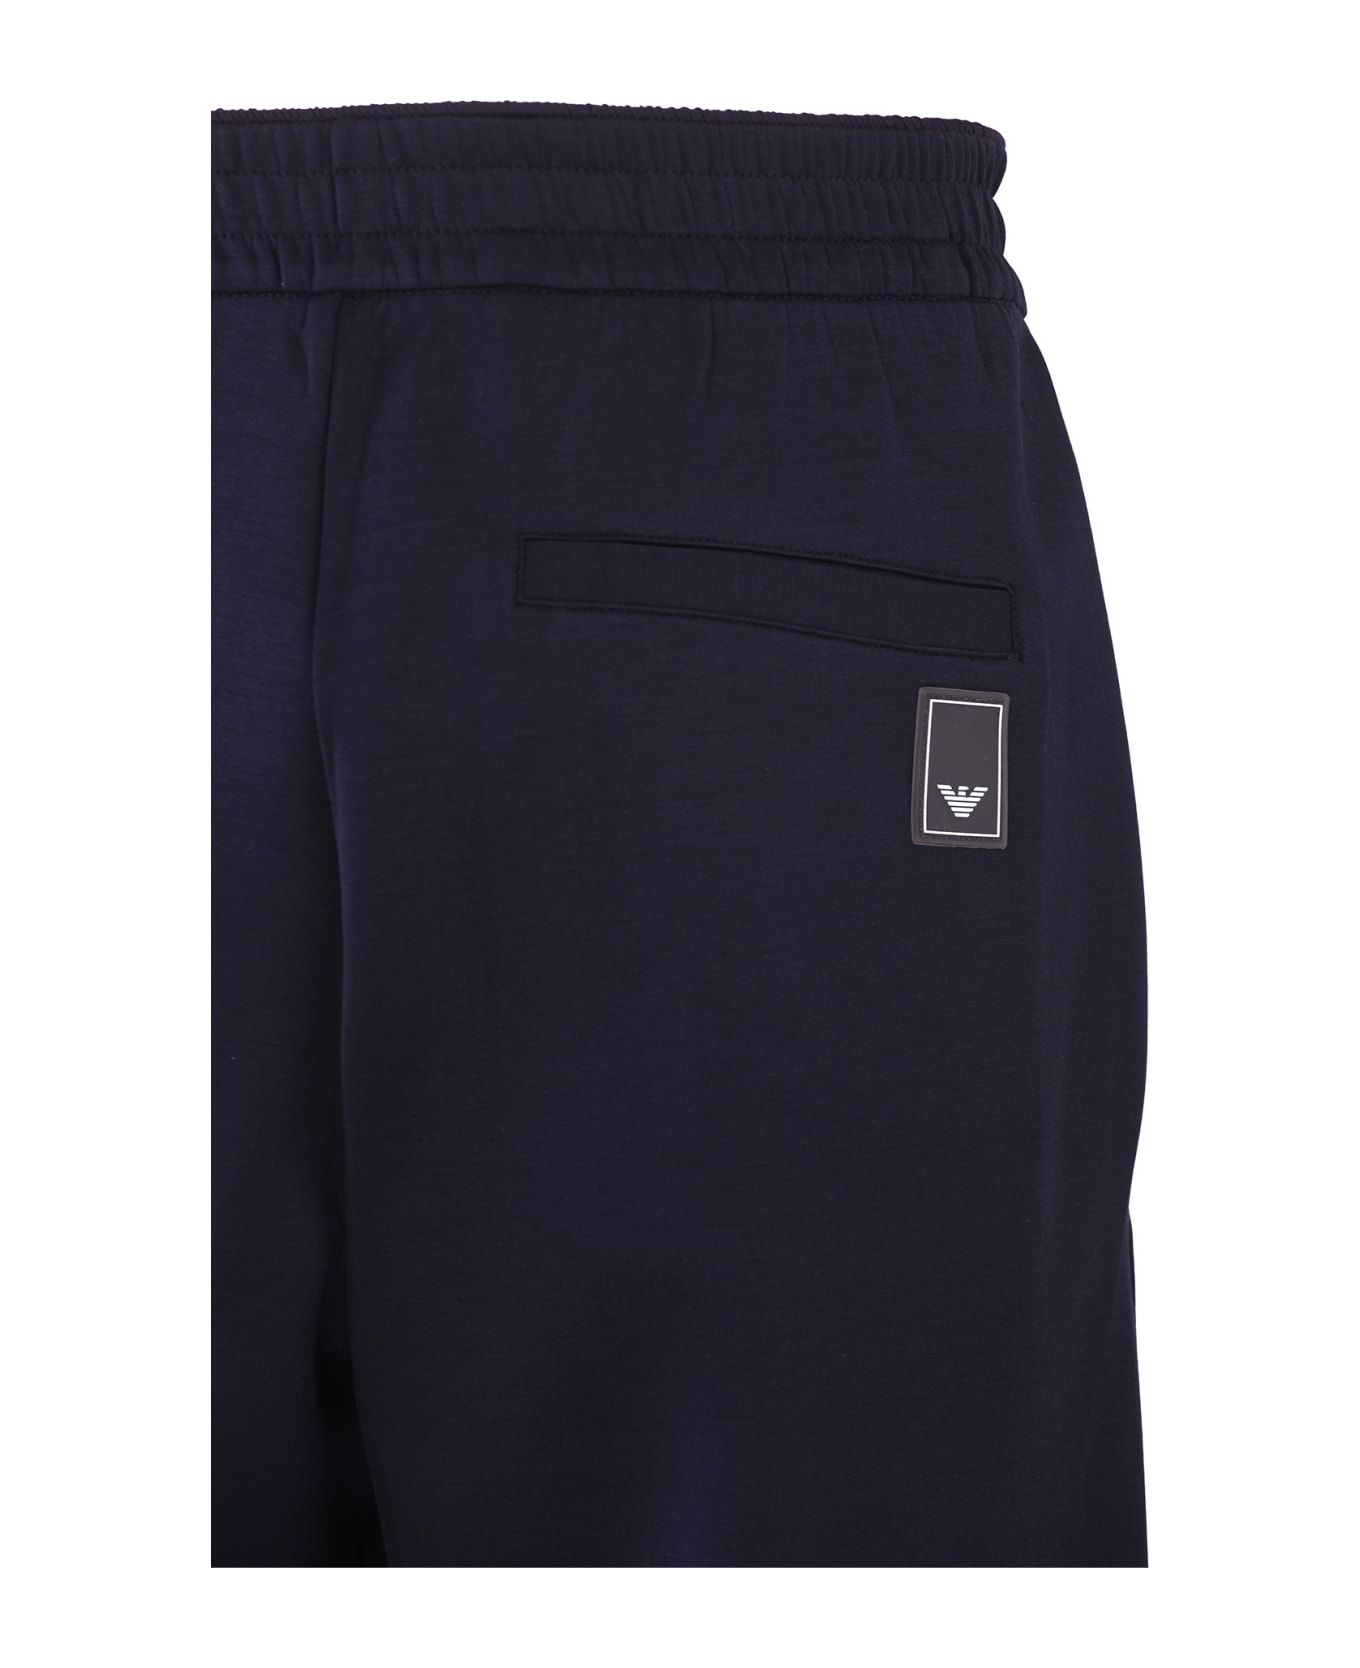 Emporio Armani Trousers Blue - Blue スウェットパンツ